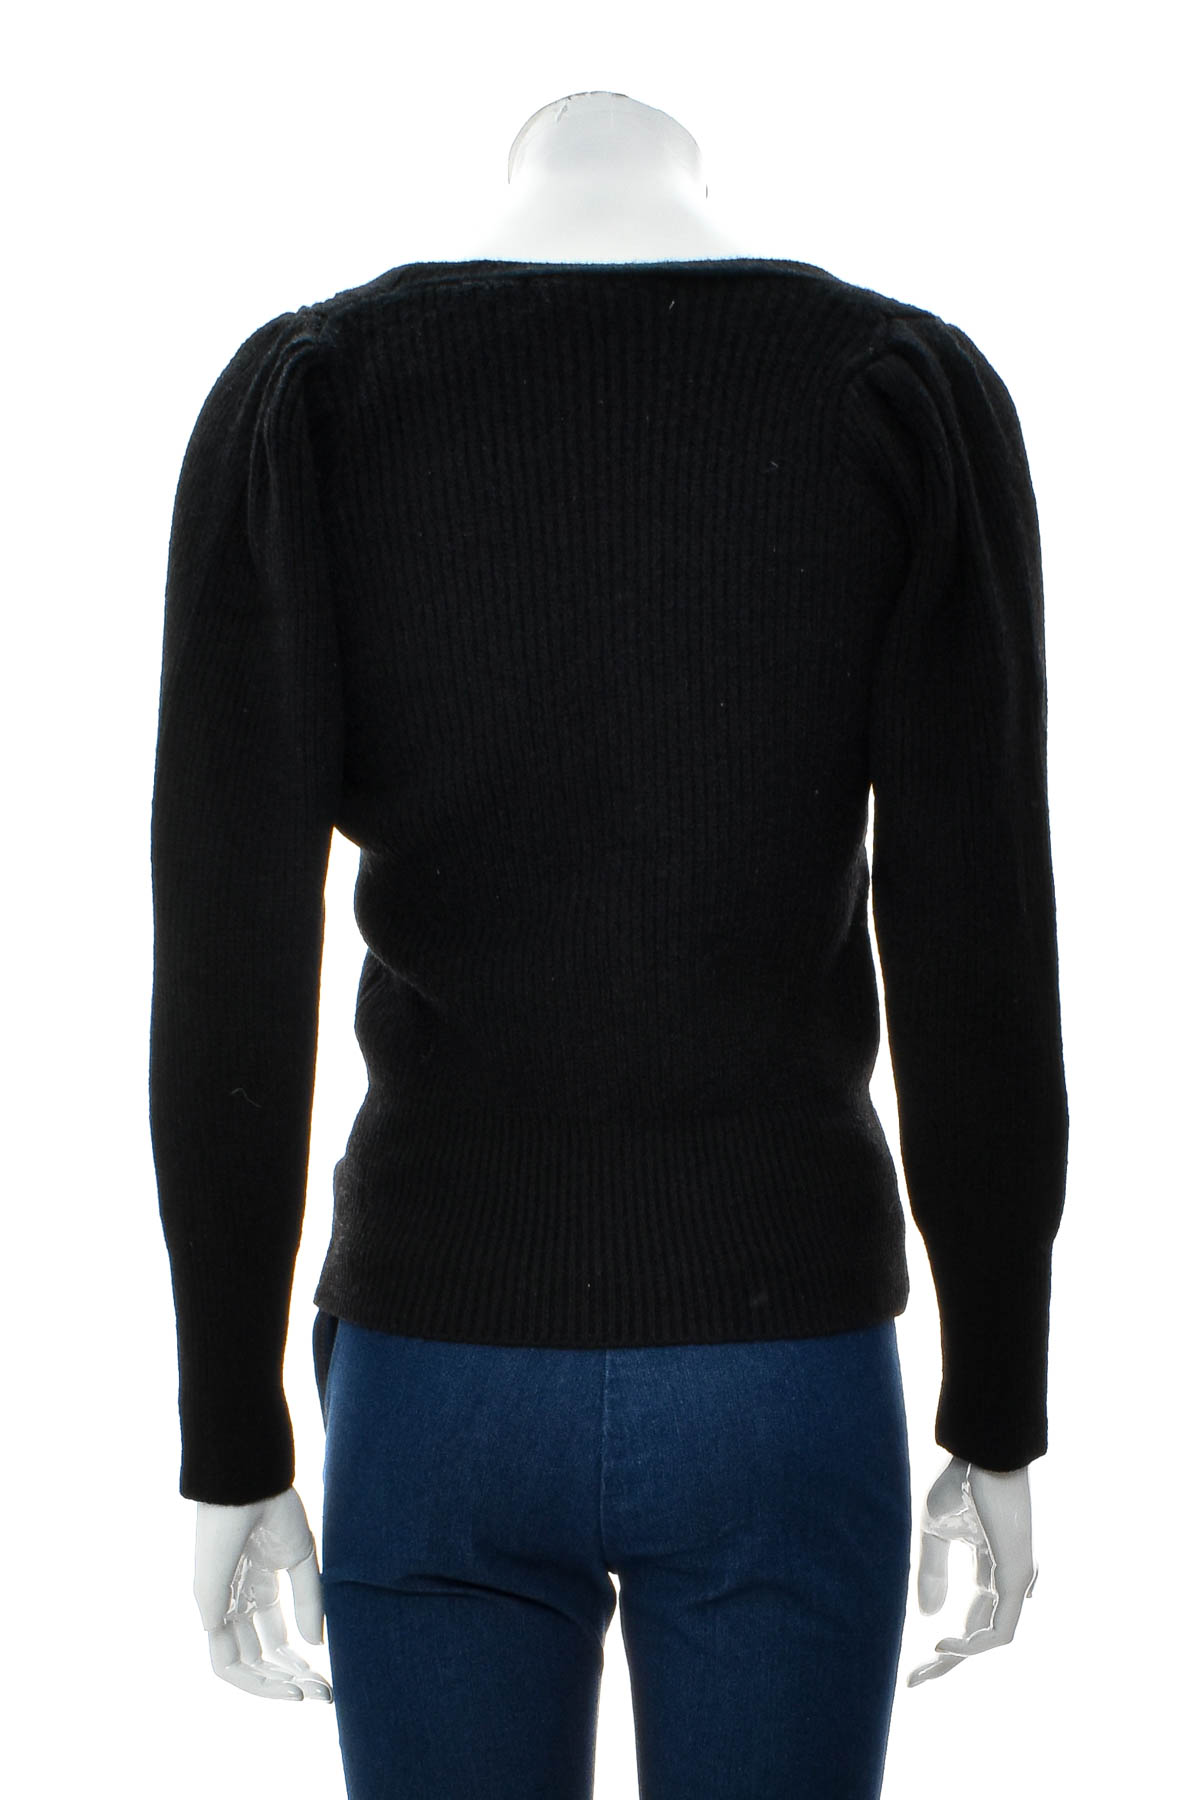 Women's sweater - NAIN - 1